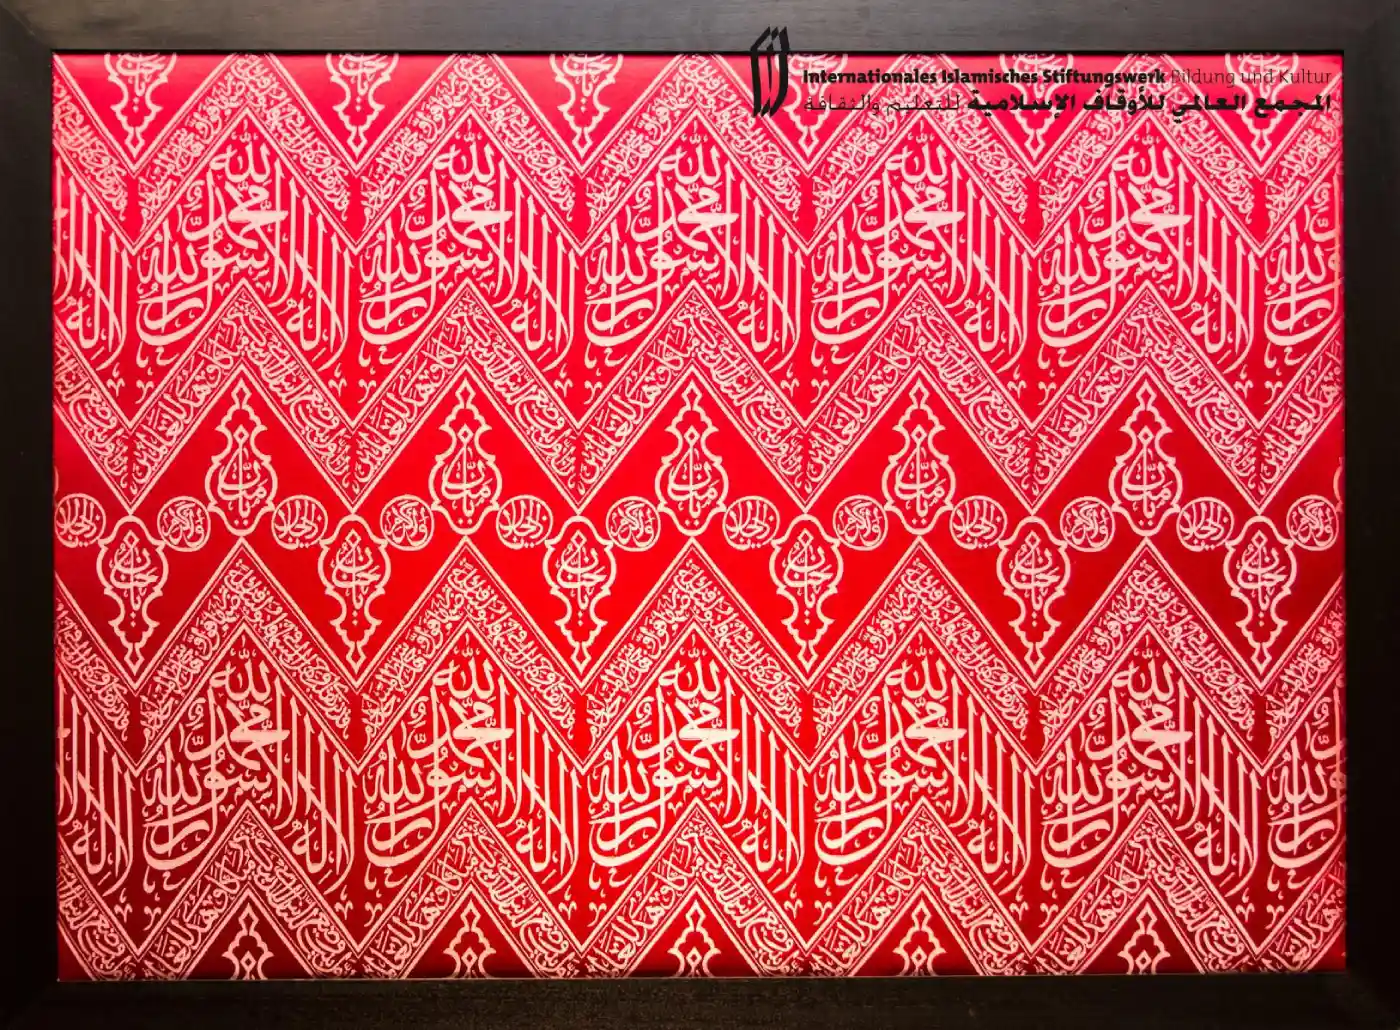 Abbildung-eines-eingerahmten-stueck-stoffs-des-inneren-der-kaaba-mit-kalligraphischen-bestueckungen-IISW